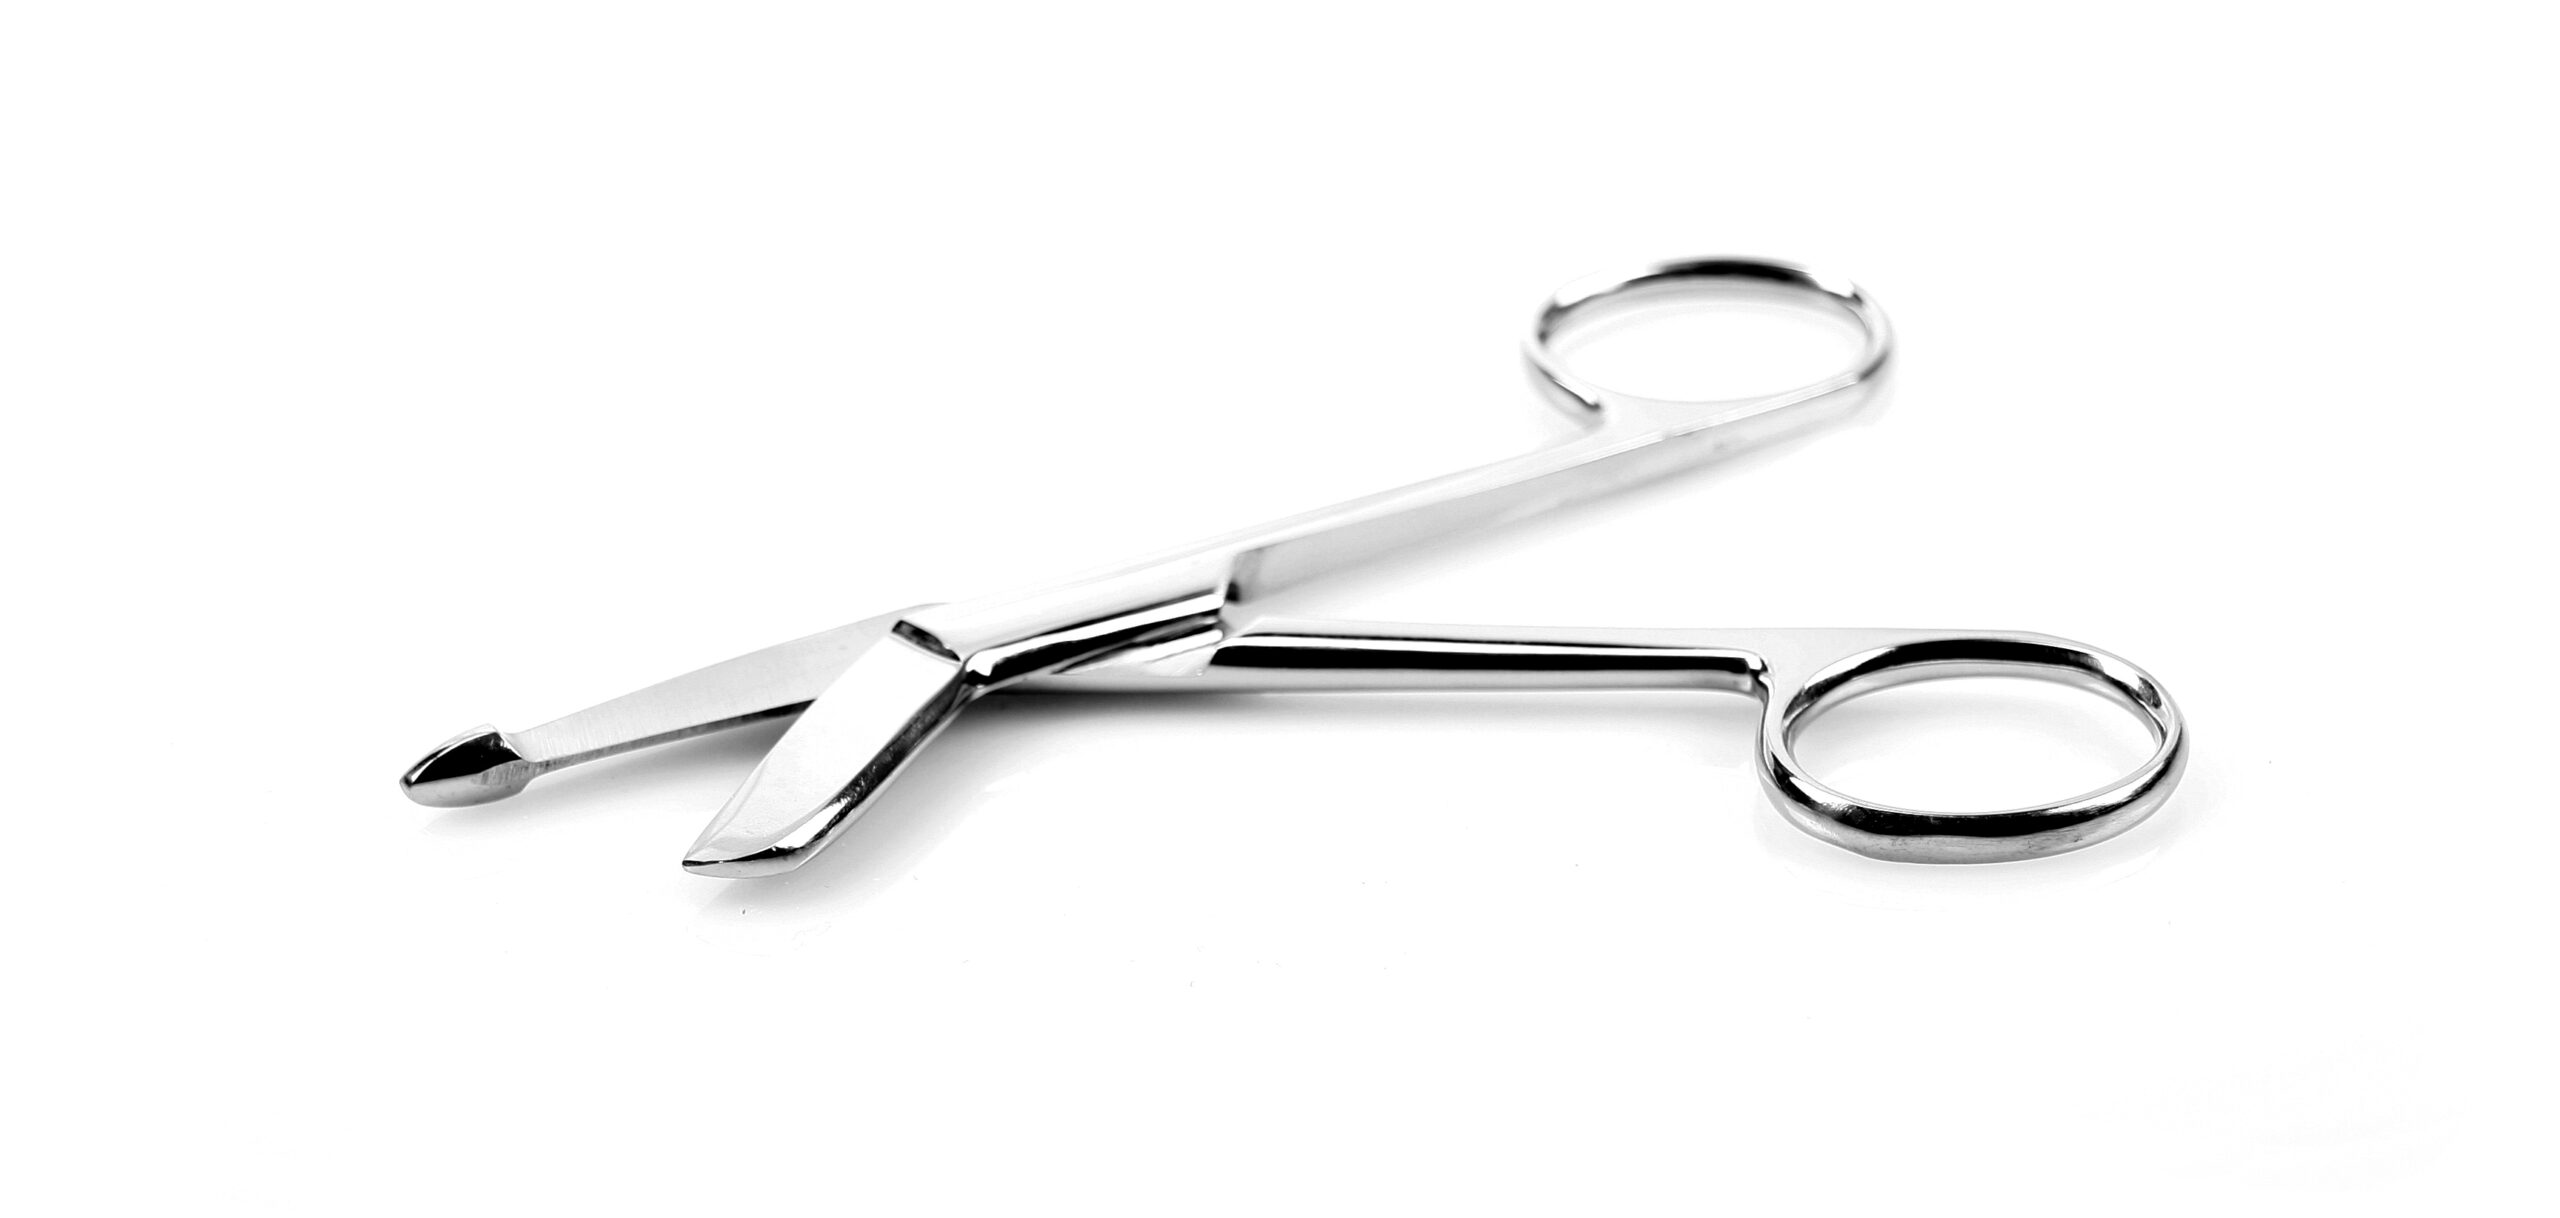 Bondage Scissors